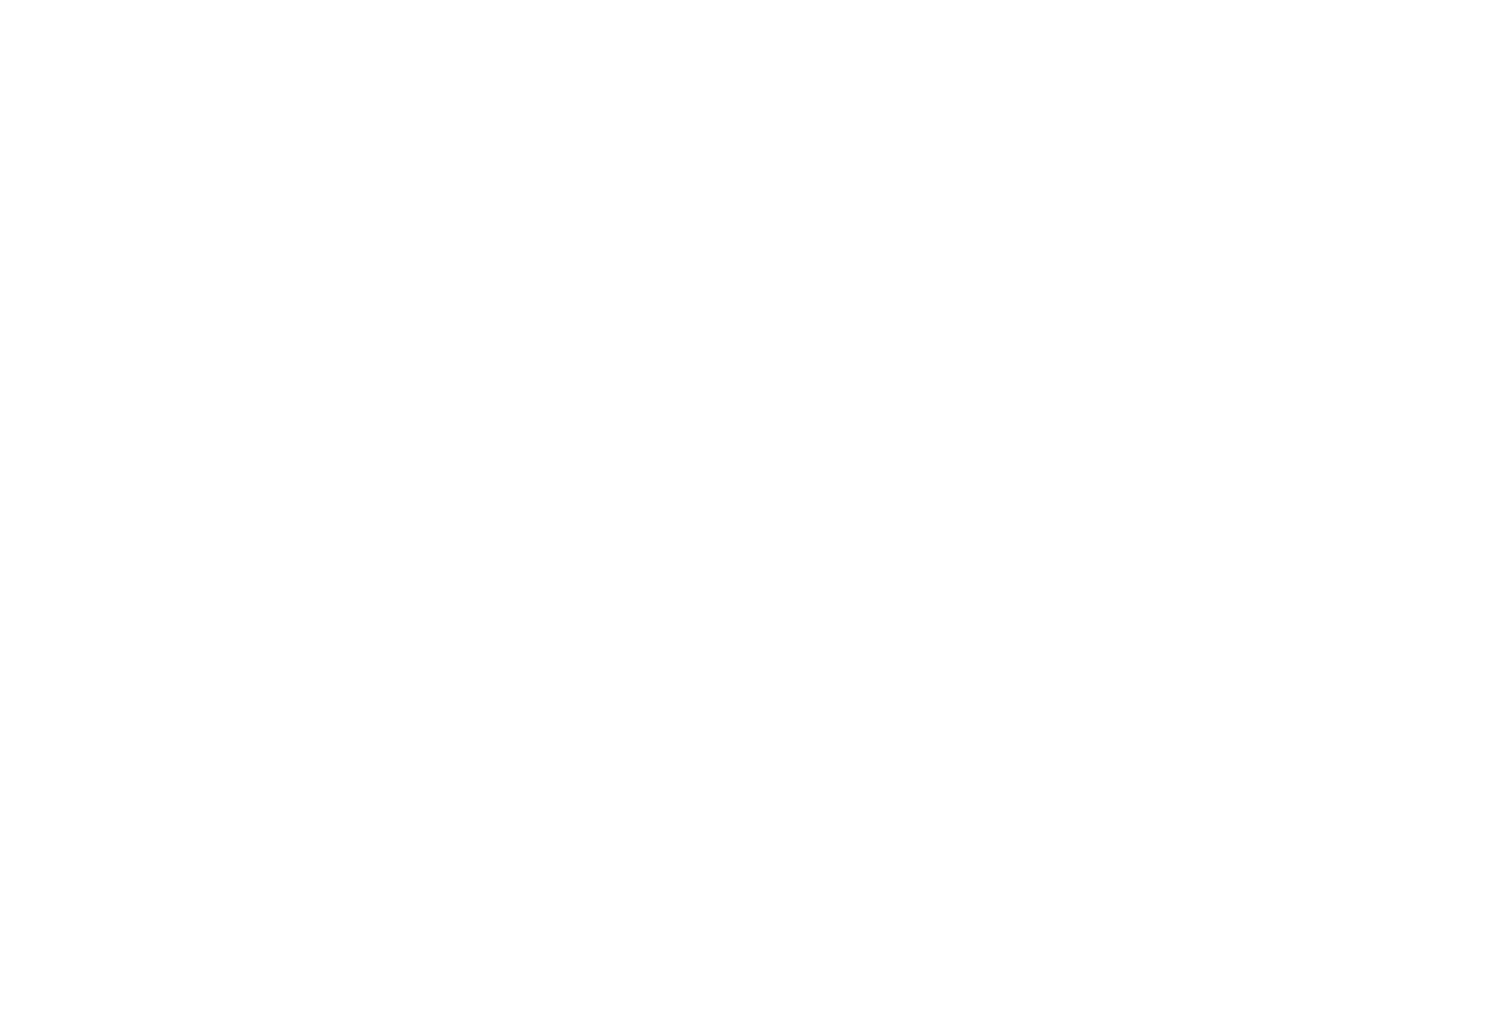 Main Street Against Big Tech